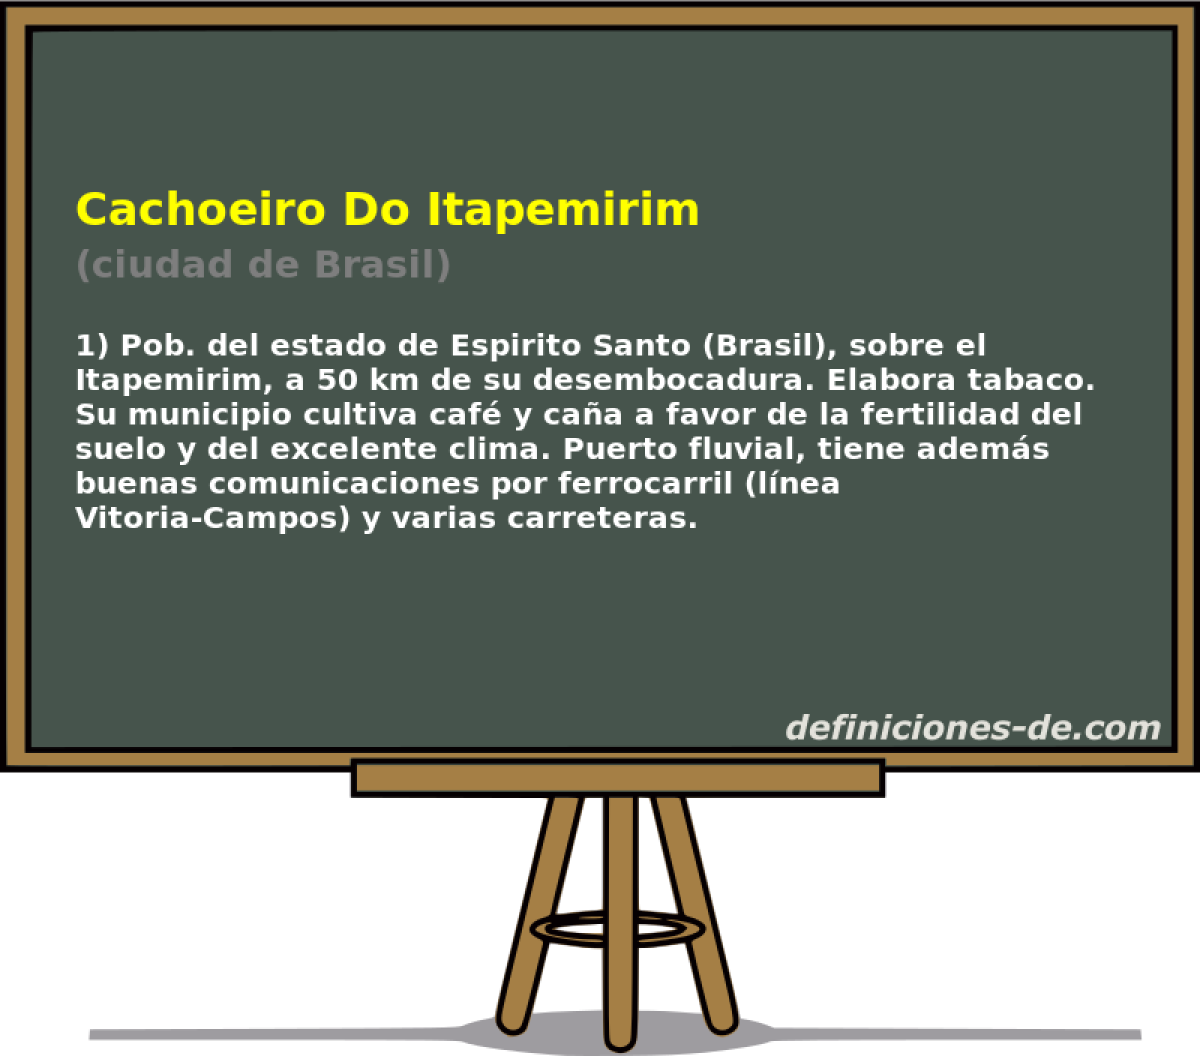 Cachoeiro Do Itapemirim (ciudad de Brasil)